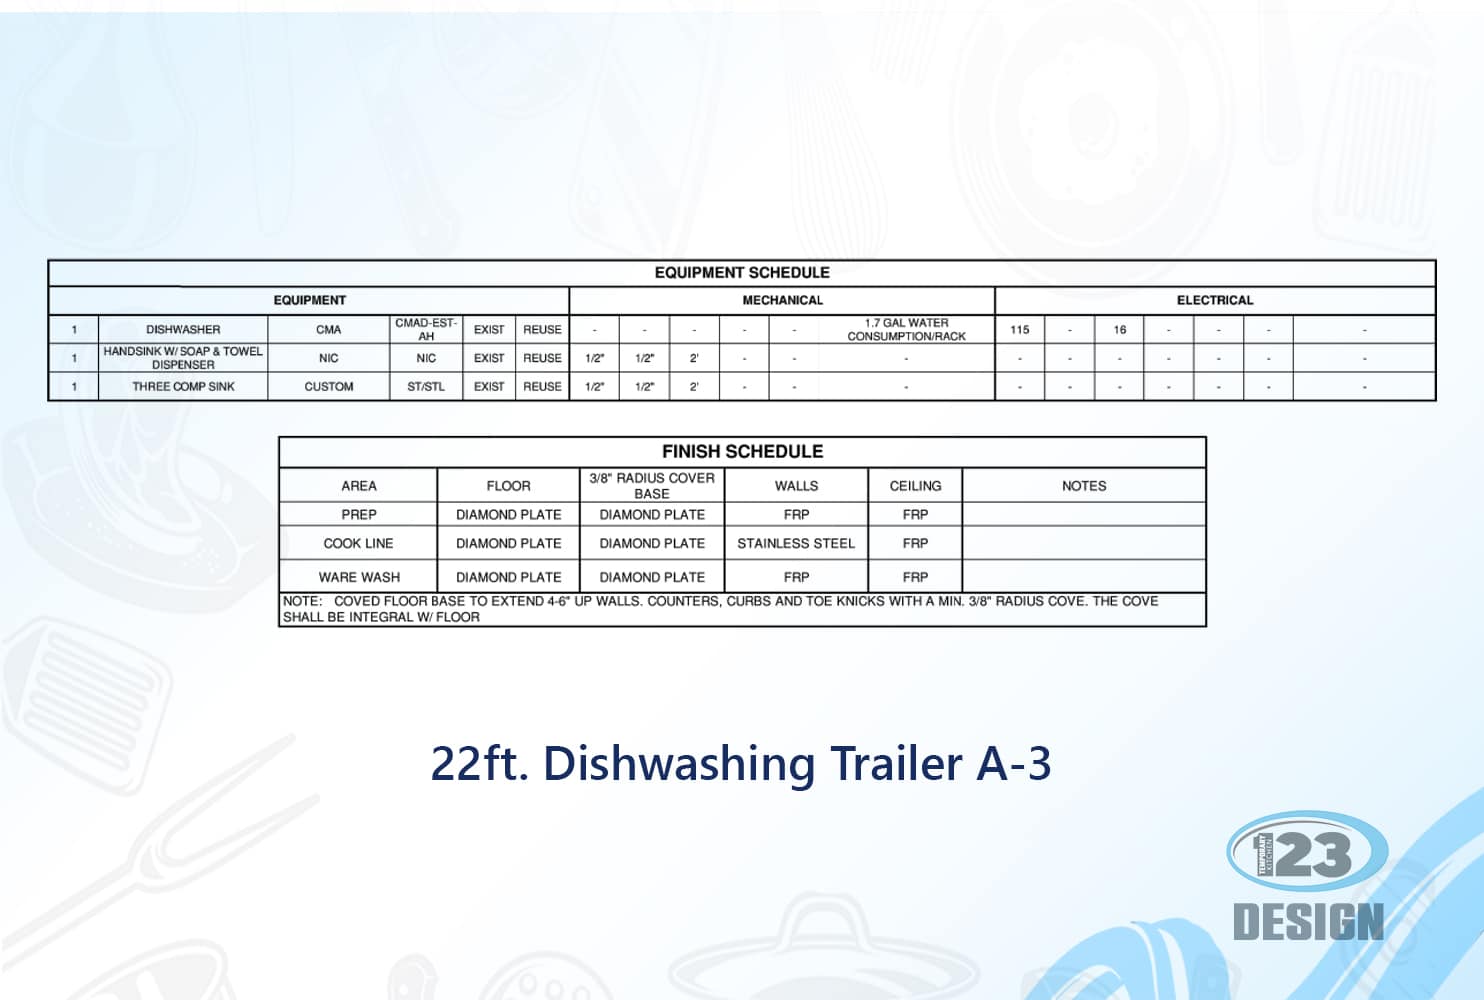 22ft. Dishwashing Trailer A-3